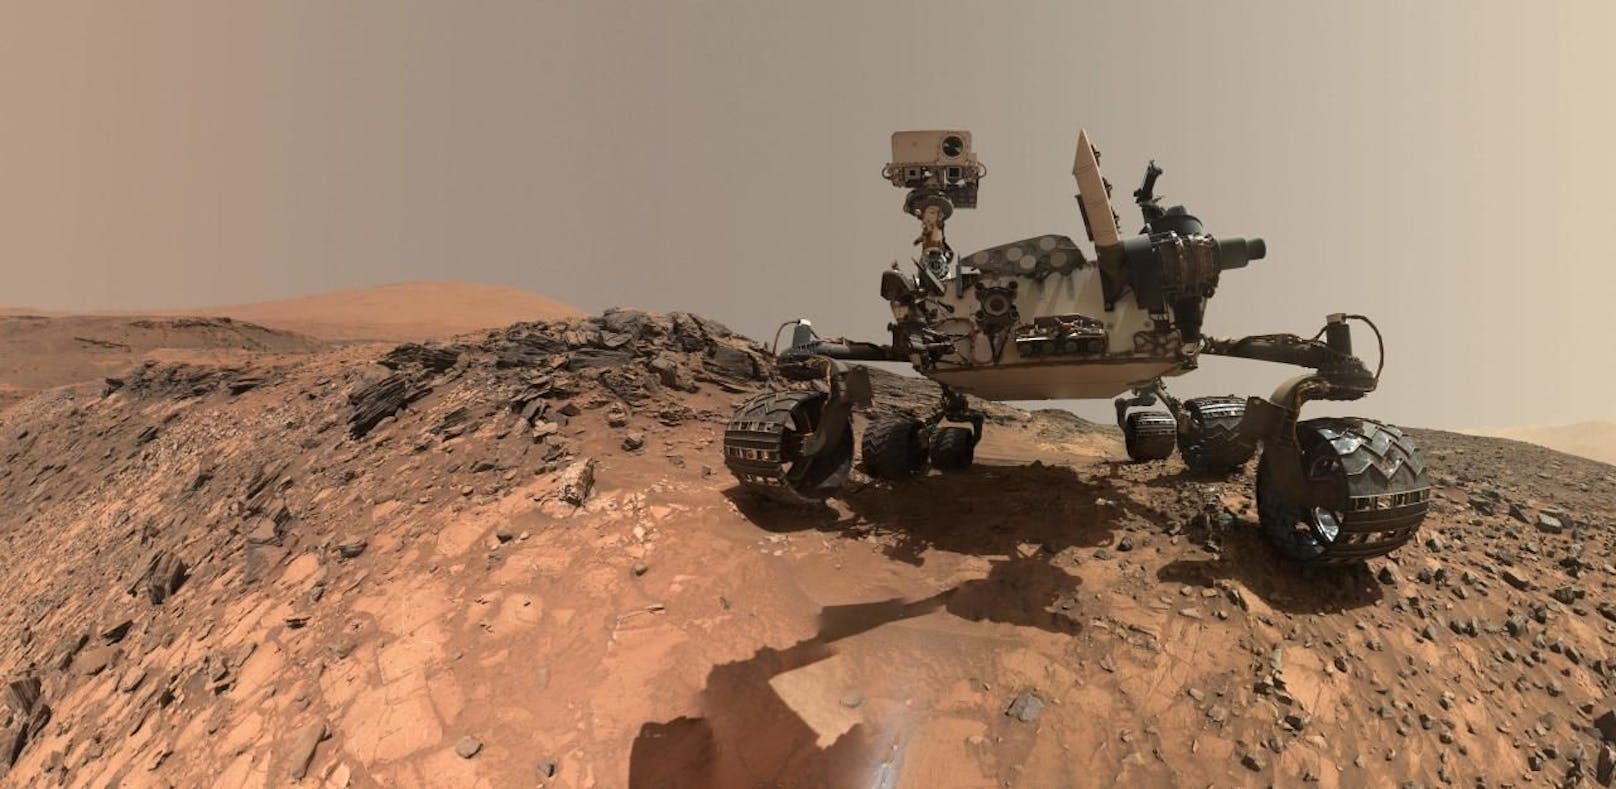 Sonde entdeckt Bausteine des Lebens auf dem Mars